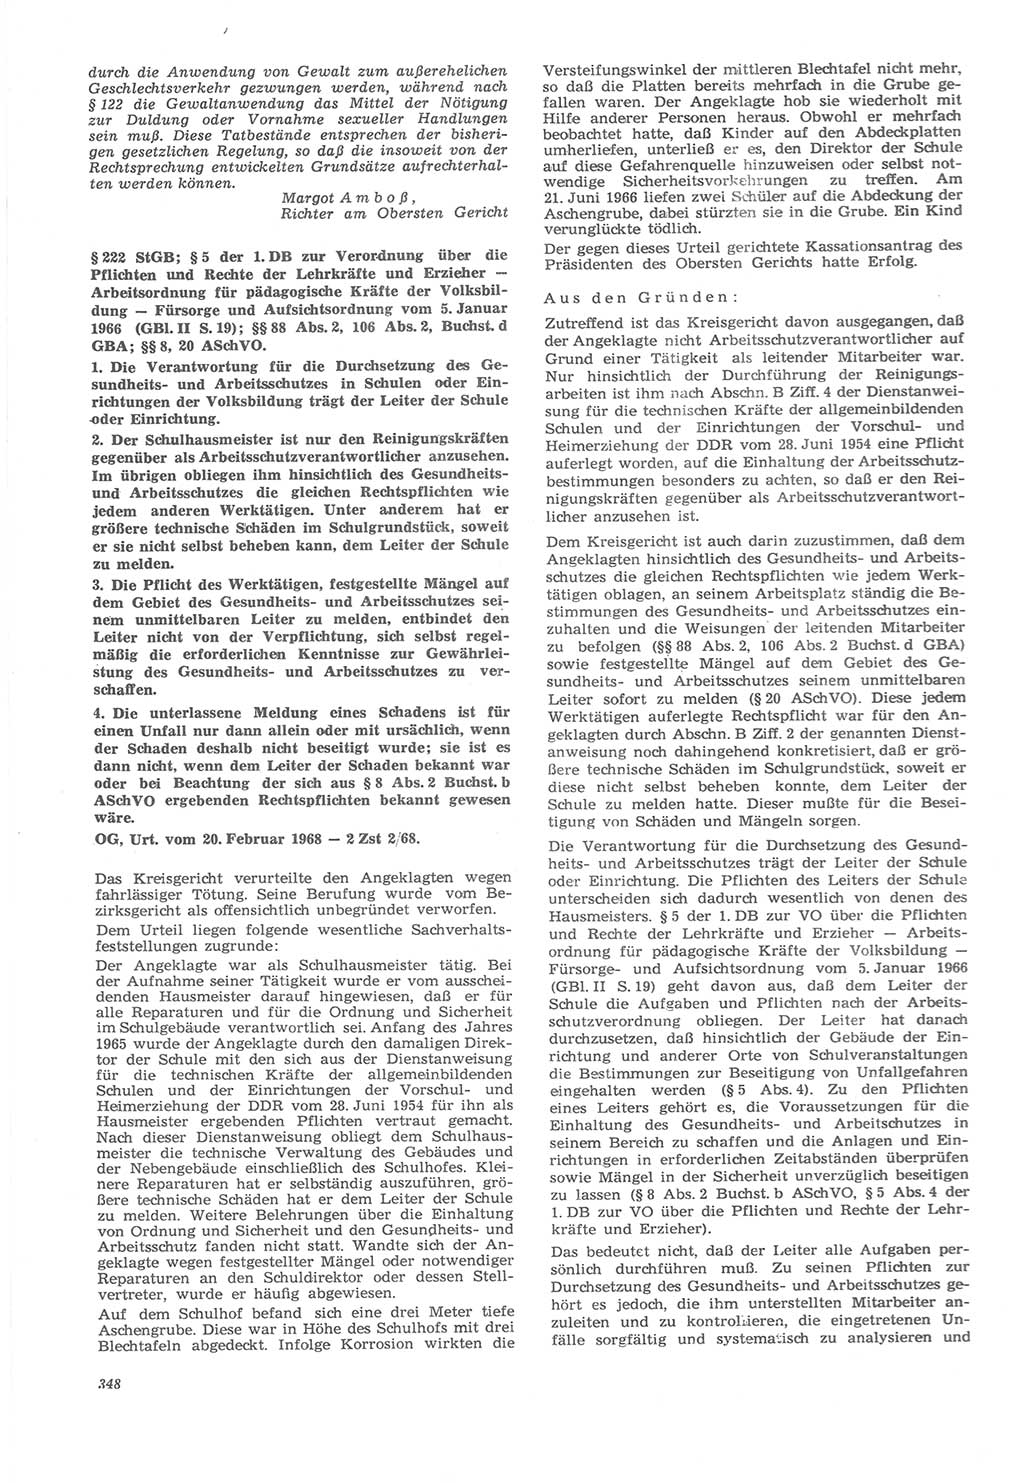 Neue Justiz (NJ), Zeitschrift für Recht und Rechtswissenschaft [Deutsche Demokratische Republik (DDR)], 22. Jahrgang 1968, Seite 348 (NJ DDR 1968, S. 348)